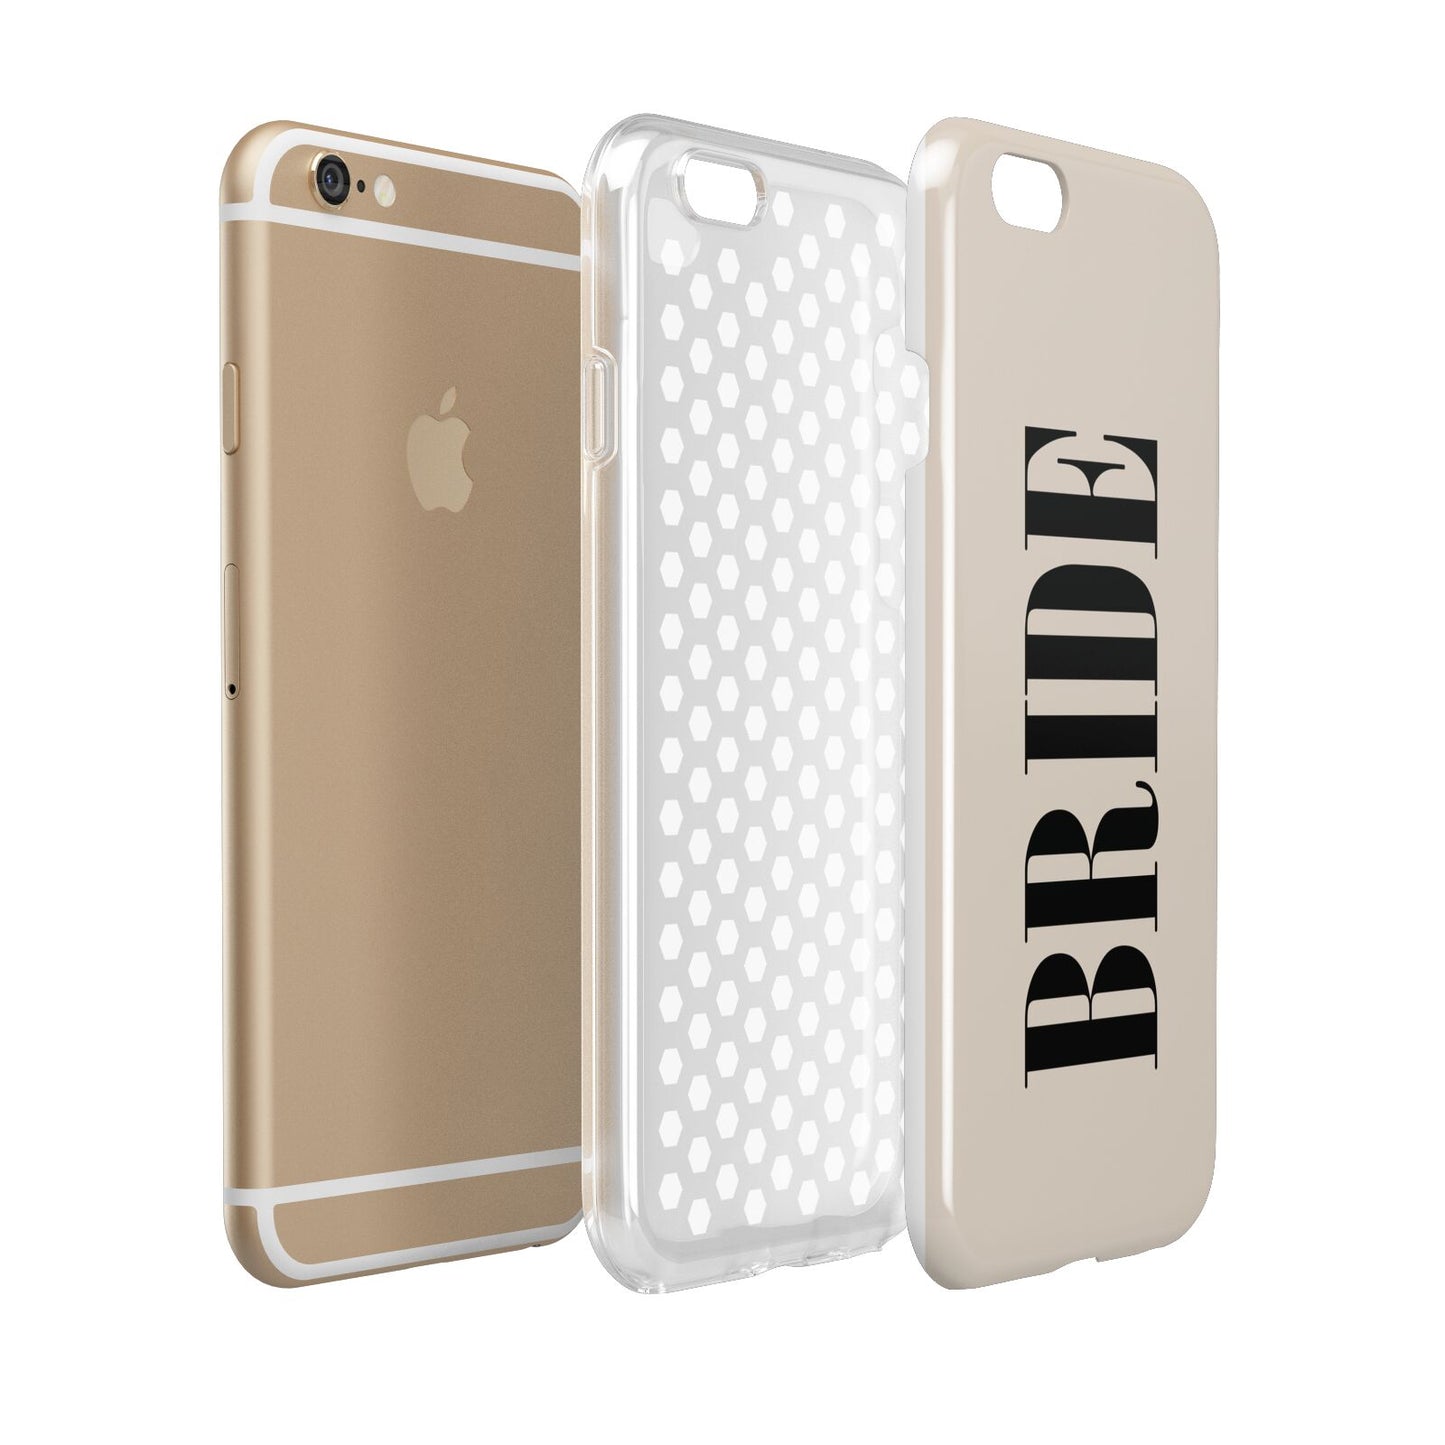 Future Bride Apple iPhone 6 3D Tough Case Expanded view